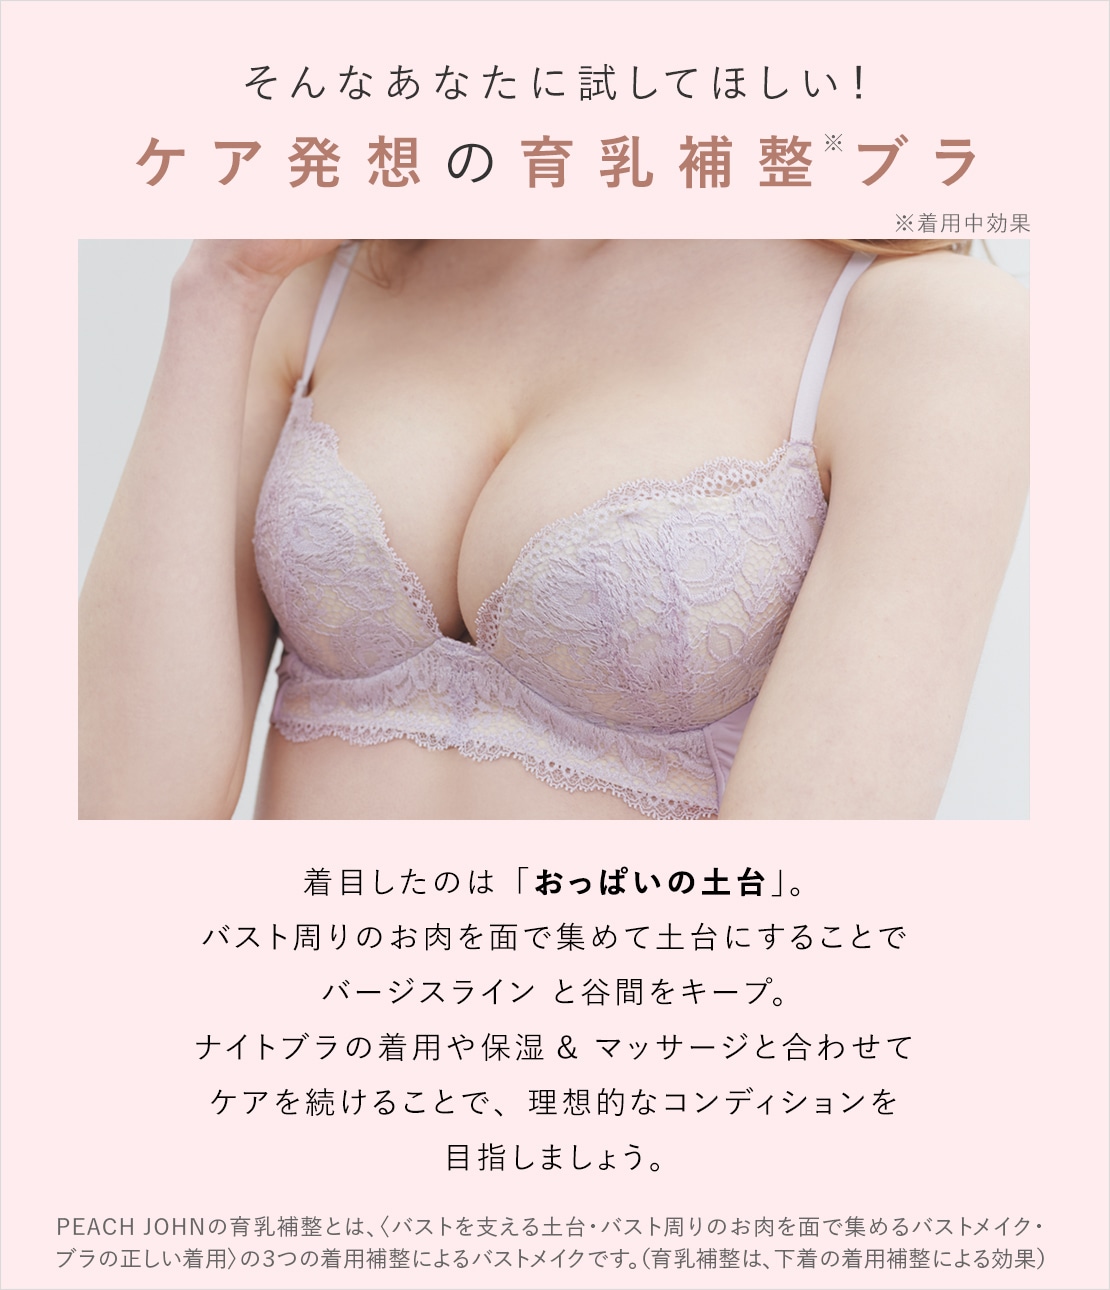 ☆2カップUP☆ 盛りブラ ナイトブラ バストアップ 育乳ブラ ピンク